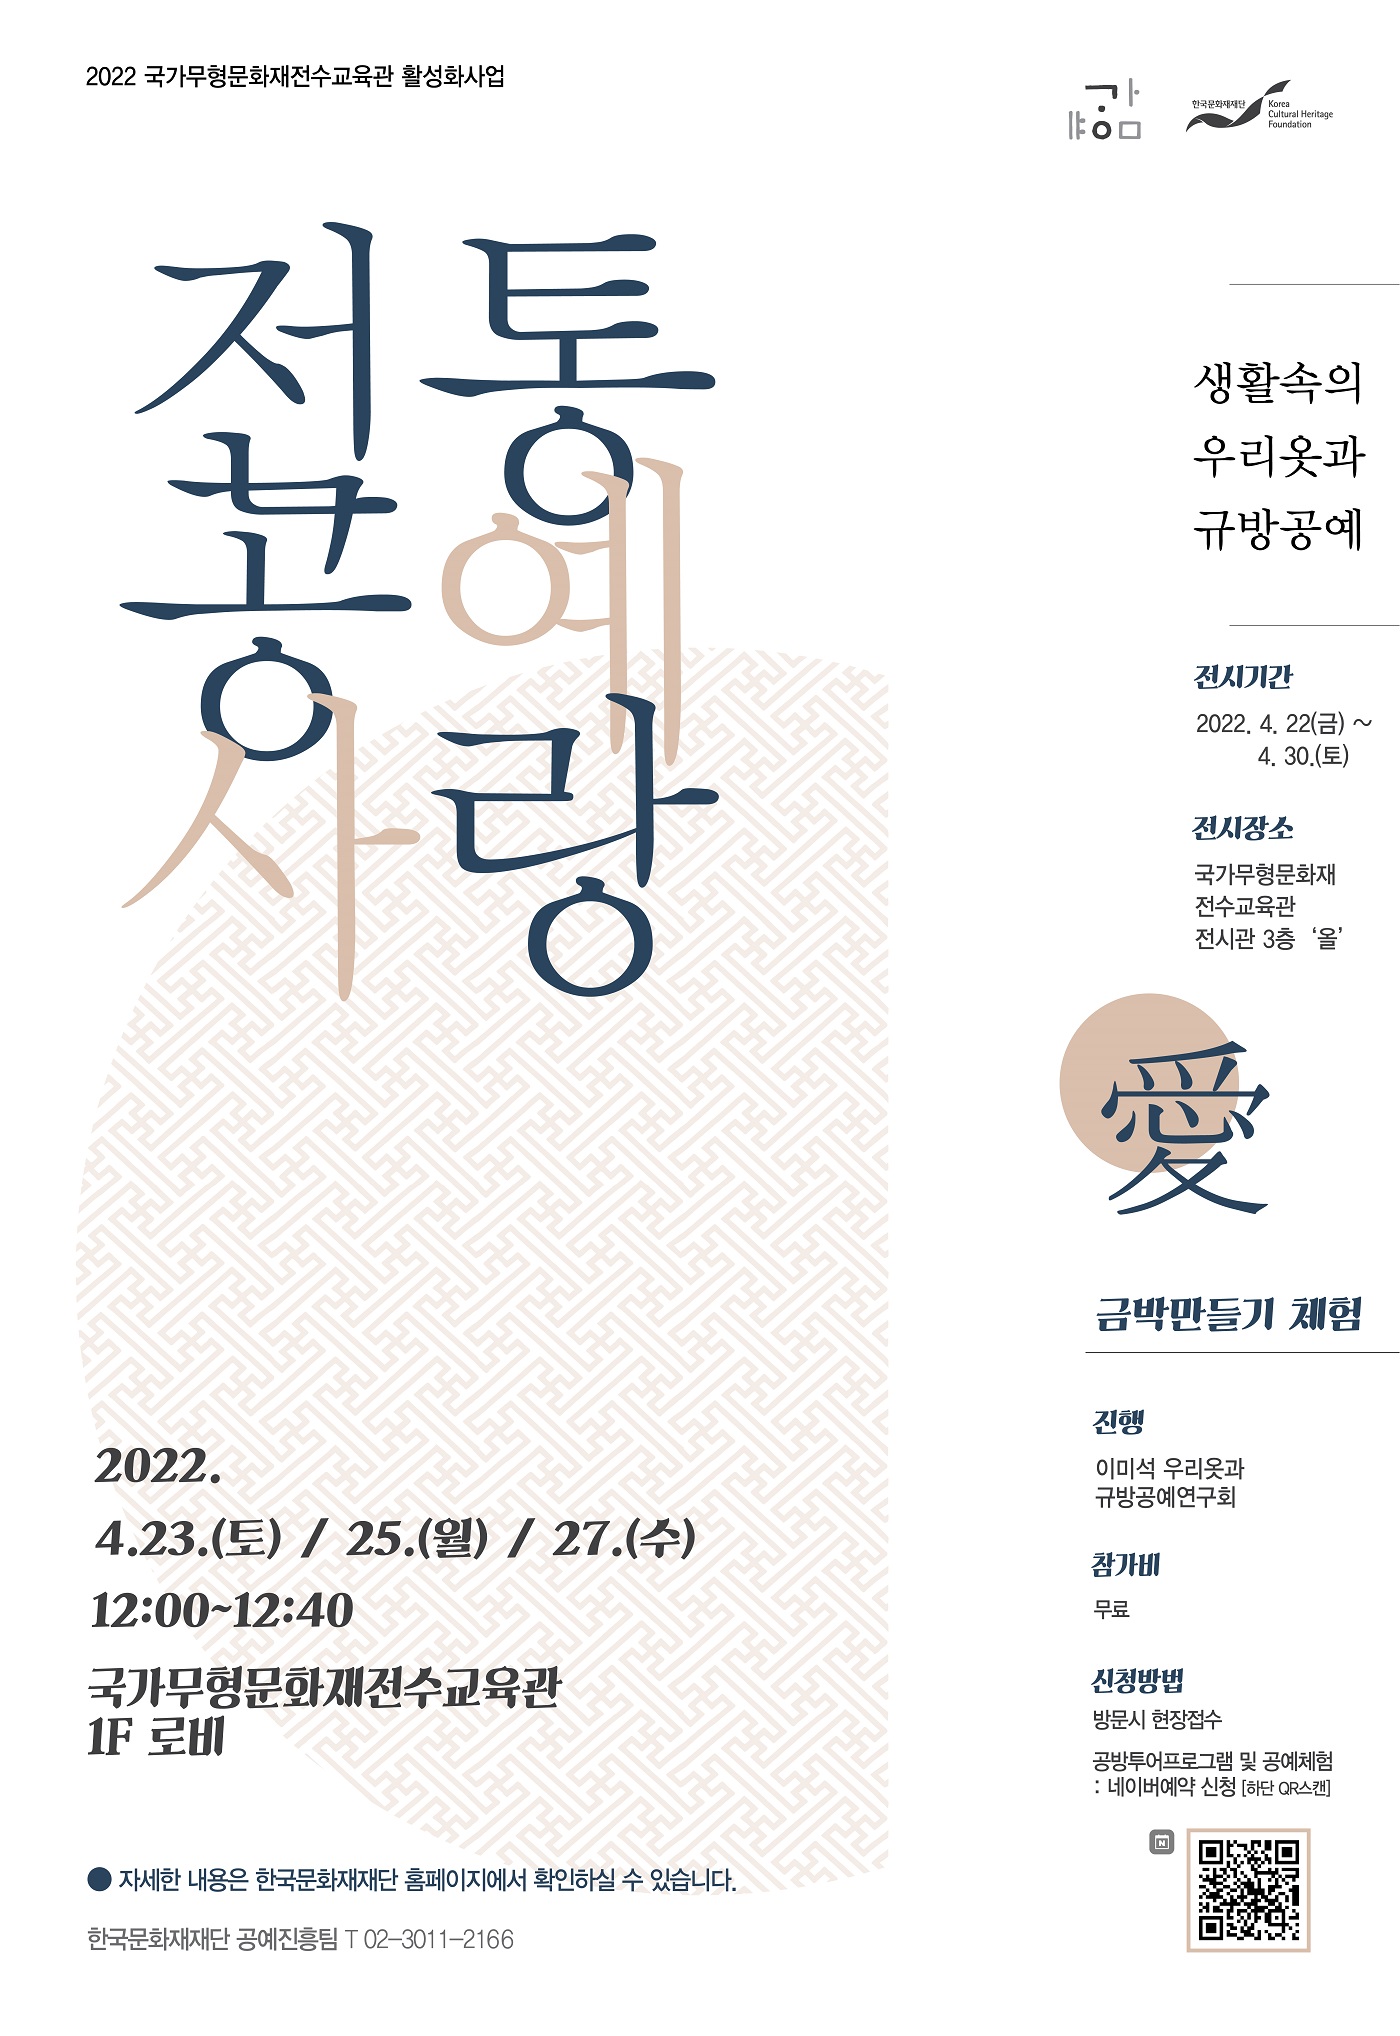  2022 국가무형문화재전수교육관 활성화사업 한국문화재재단 Korea Cultural Heritage Foundation 전통공예사랑 생활속의 우리옷과 규방공예 전시기간 : 2022. 4. 22(금) ~ 4. 30.(토) 전시장소 : 국가무형문화재 전수교육관 전시관 3층 '올 - 금박만들기 체험 -  진행 : 이미석 우리옷과 규방공예연구회 참가비 : 무료 신청방법 방문시 / 현장접수  공방투어프로그램 및 공예체험 : 네이버예약 신청 [하단 QR스캔] / QR이미지  2022. 4.23.(토) / 25.(월) / 27.(수) 12:00~12:40 국가무형문화재전수교육관 1F 로비 ● 자세한 내용은 한국문화재재단 홈페이지에서 확인하실 수 있습니다. 한국문화재재단 공예진흥팀 T 02-3011-2166 